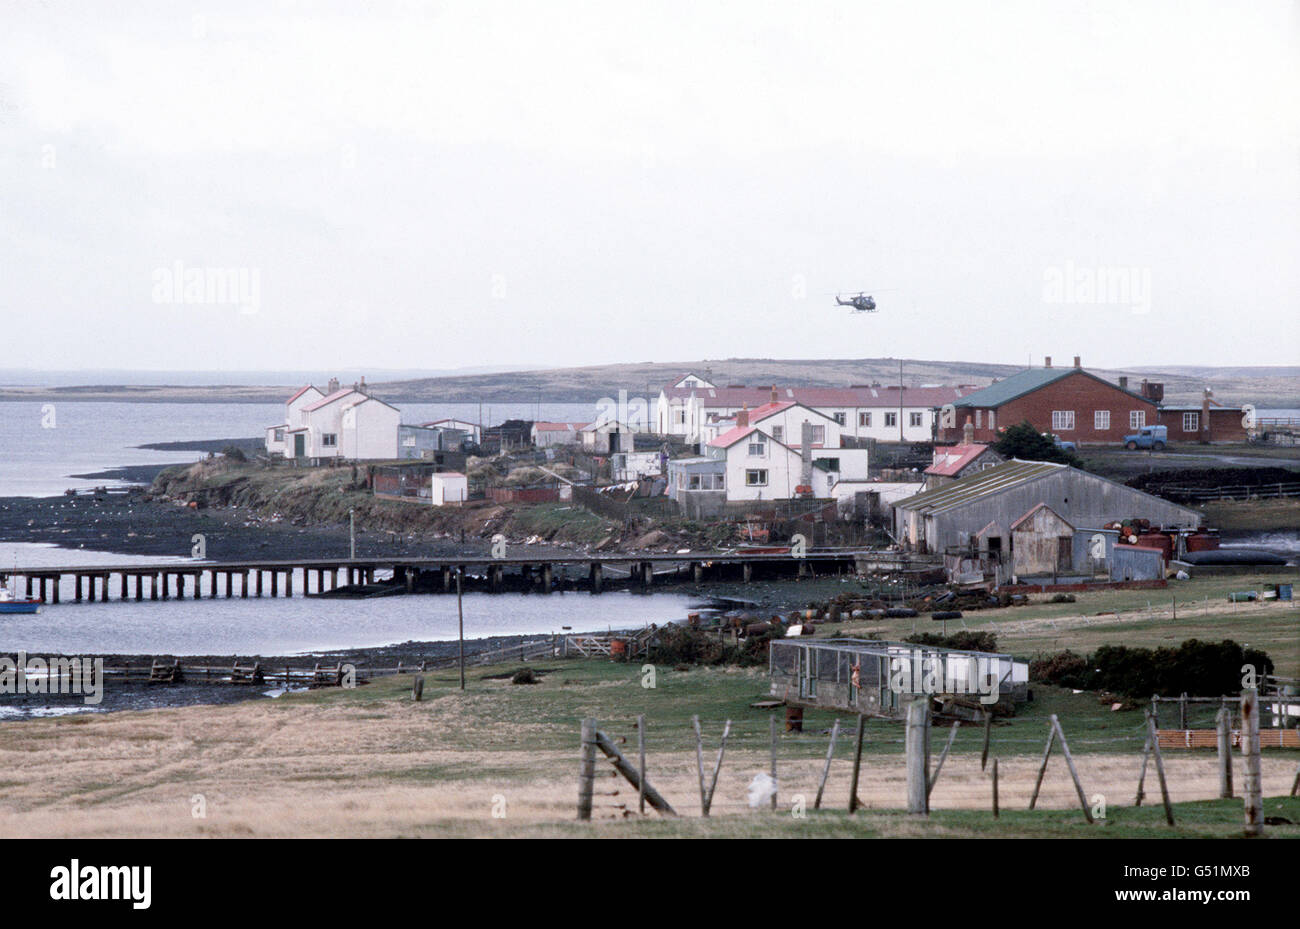 DER FALKLANDKRIEG 1982: Eine allgemeine Ansicht von Goose Green, der Ost-Falklandsiedlung, die am 27. Mai 1982 von den argentinischen Streitkräften von Fallschirmjägern (2 para) der britischen Falklandstreitkräfte zurückerobert wurde. *25/03/02Gesamtansicht von Goose Green, der Ost-Falkland-Siedlung, die am 27. Mai 1982 von den argentinischen Truppen von Fallschirmjägern (2 para) der britischen Falklands Task Force zurückerobert wurde. Der 20. Jahrestag der Invasion der Falklandinseln durch argentinische Truppen wird am 2. April 2002 stattfinden. Stockfoto